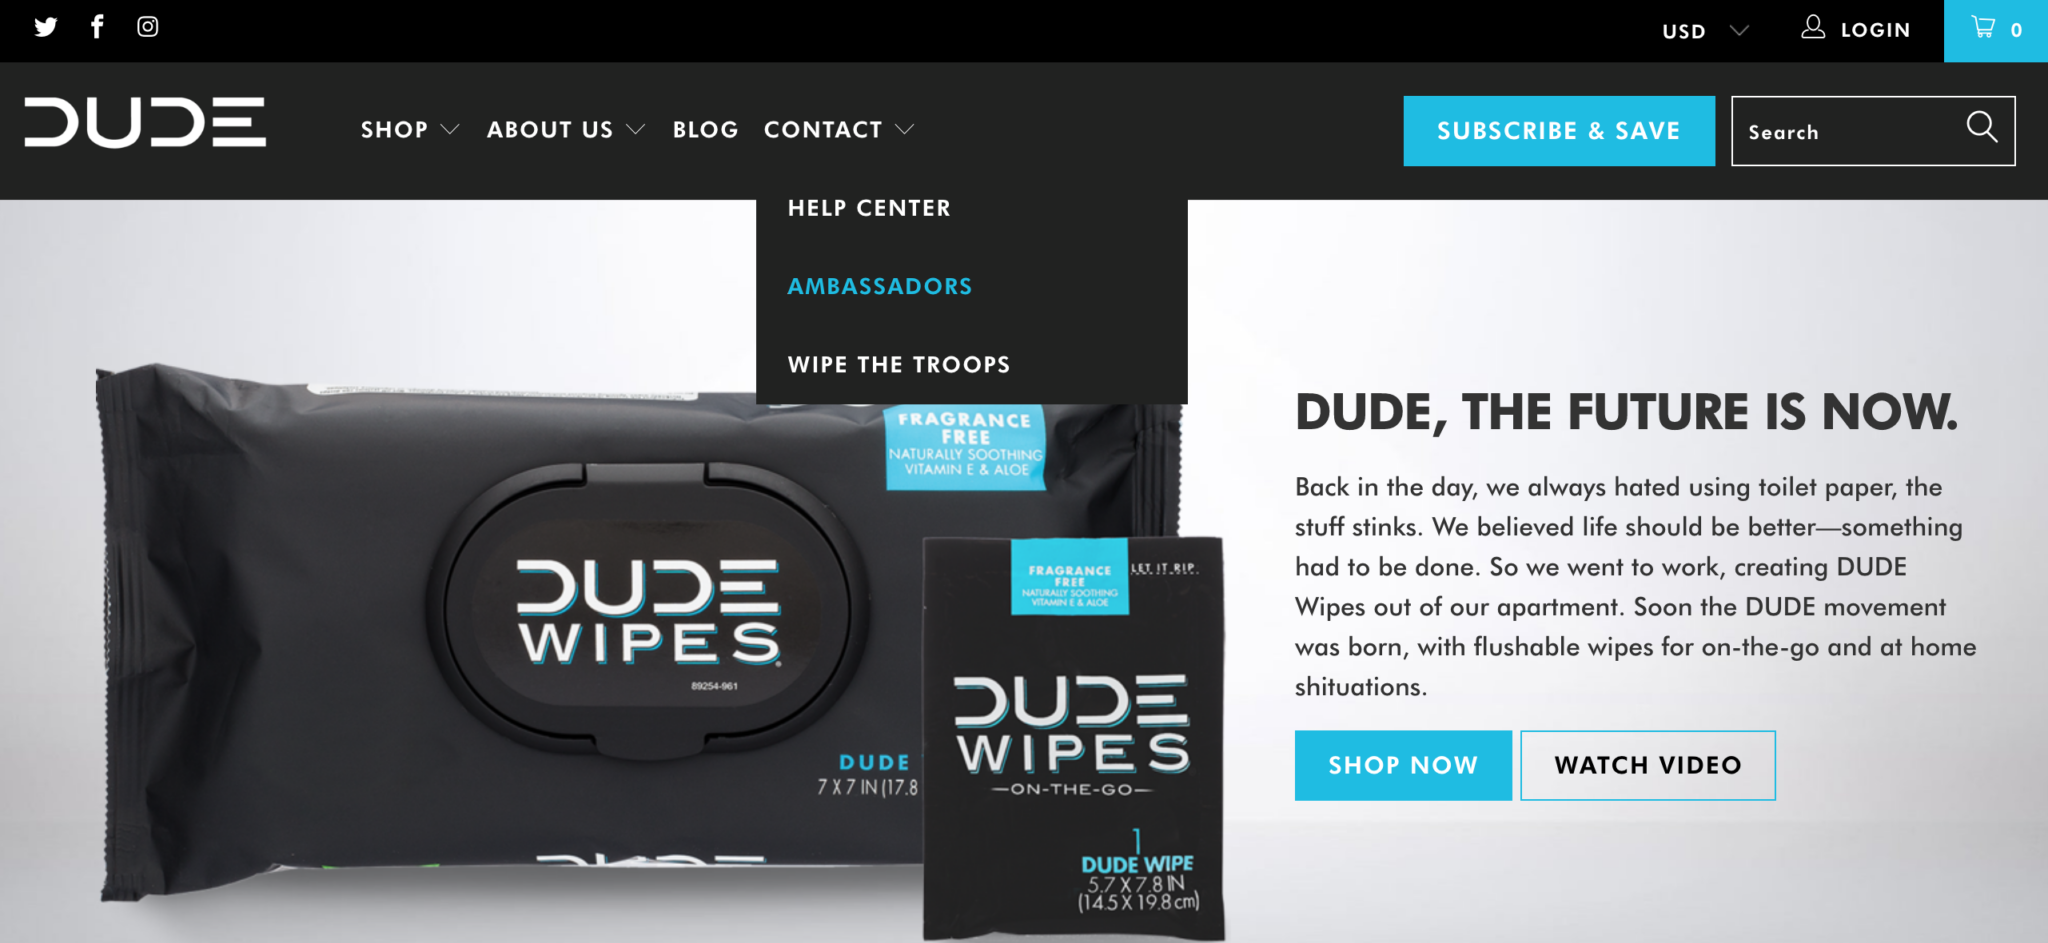 Dude Wipes website homepage